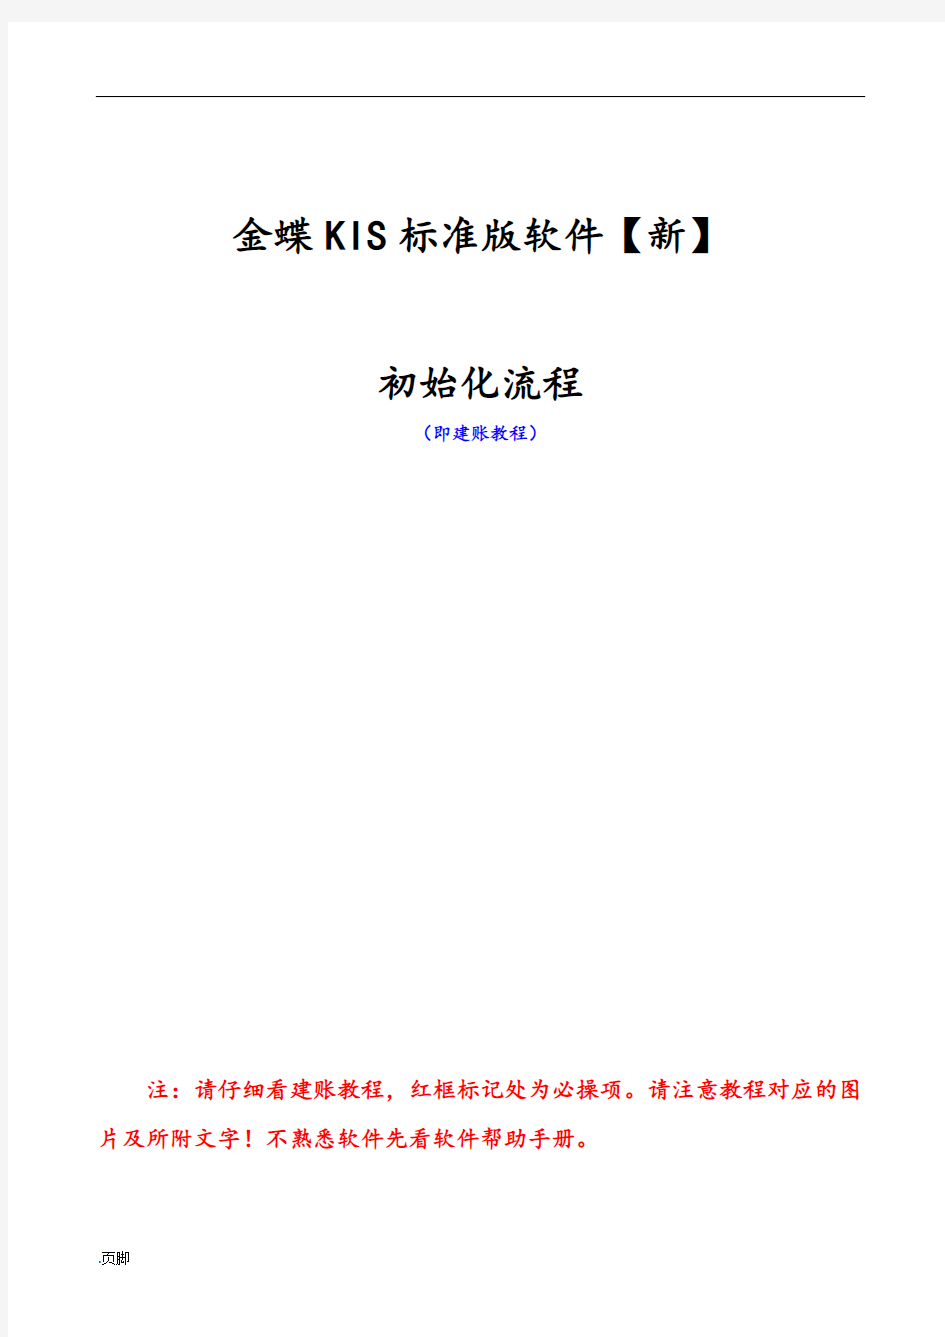 金蝶KIS标准版建账及操作流程1701